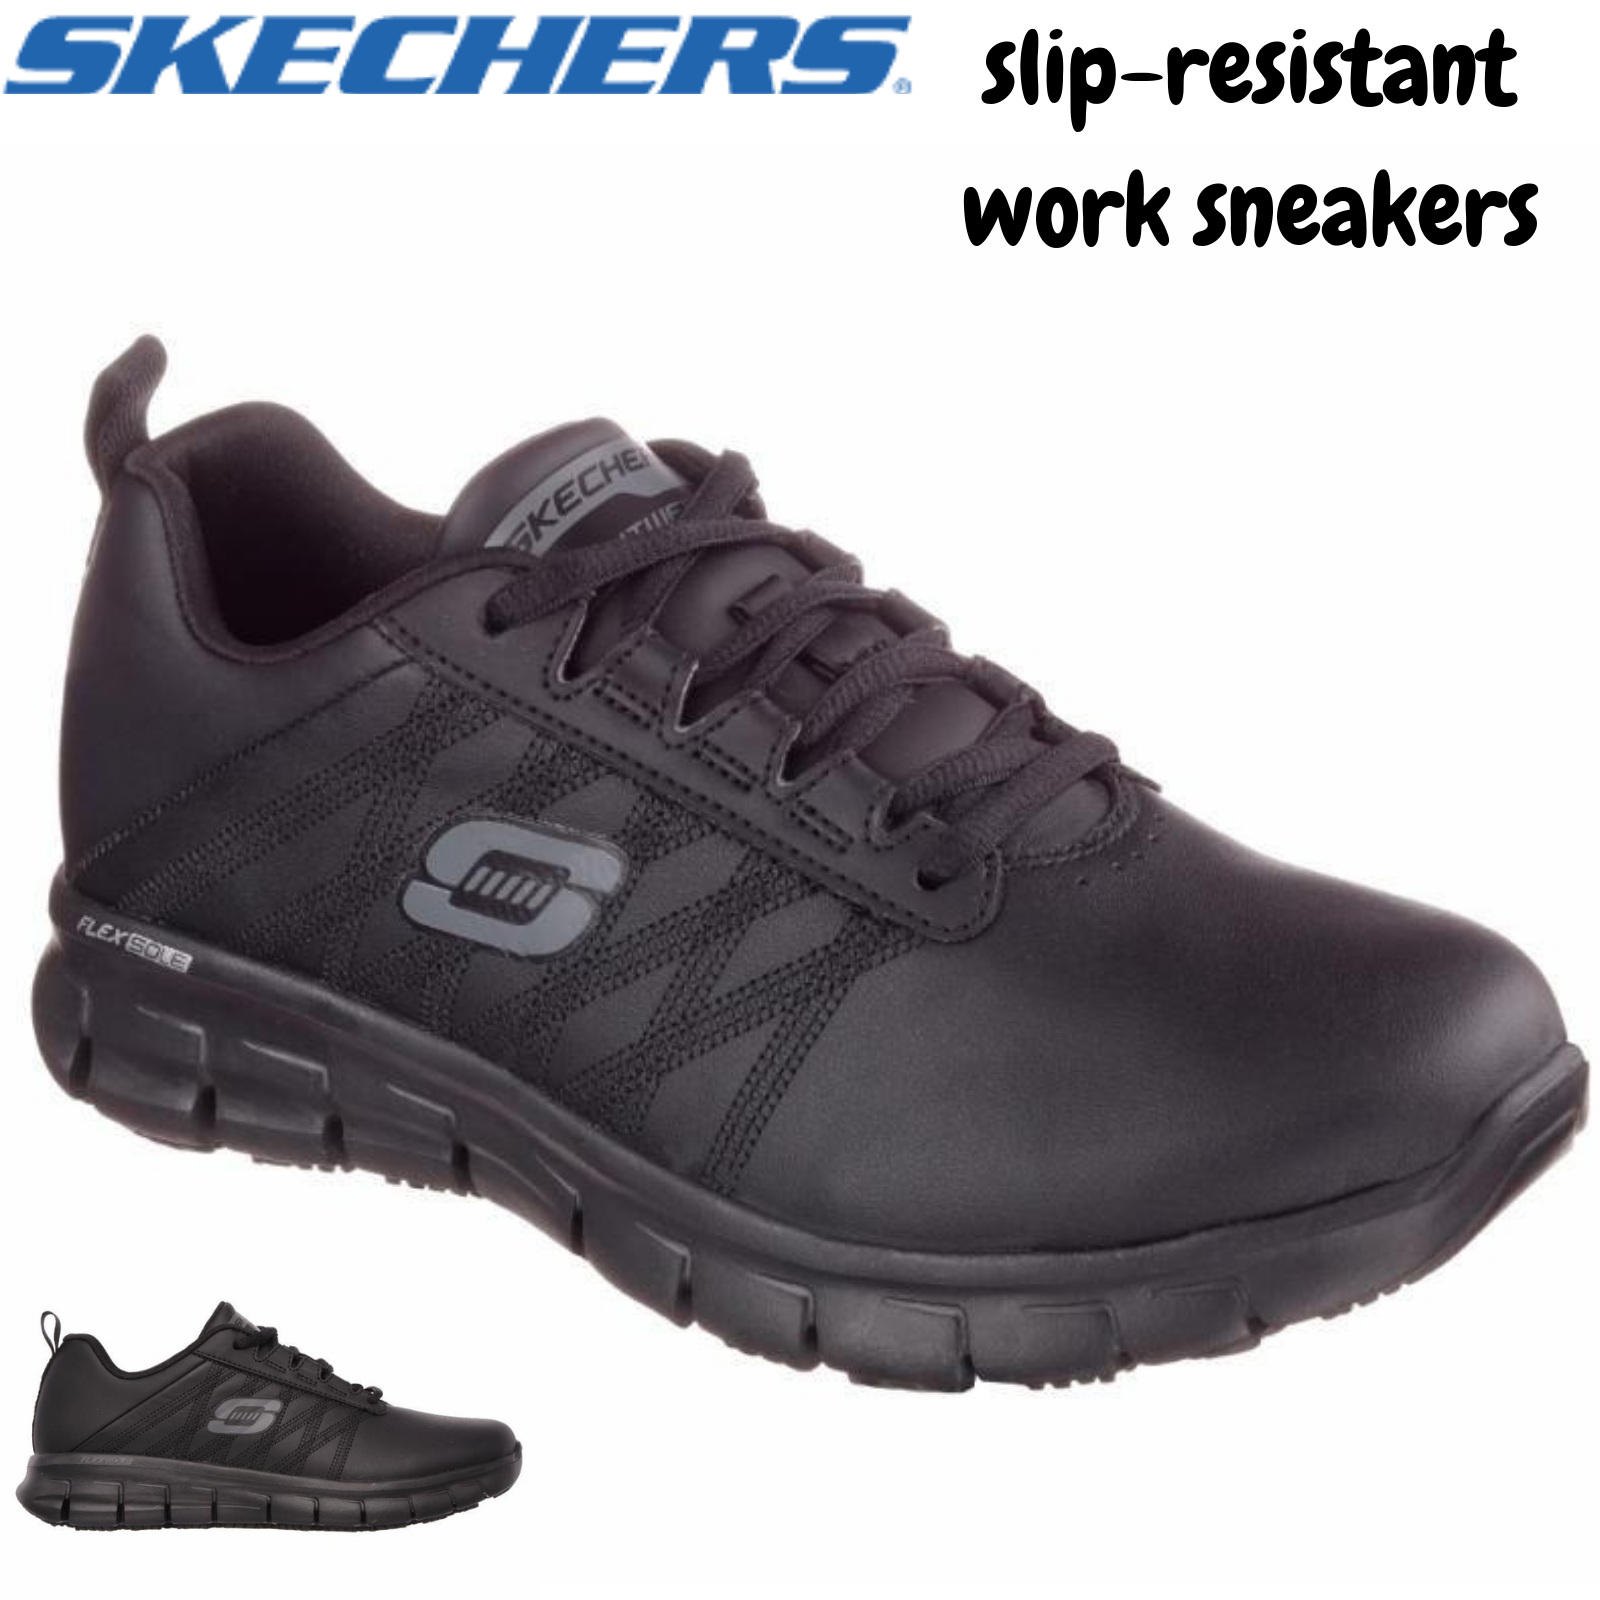 buy skechers shoes near me